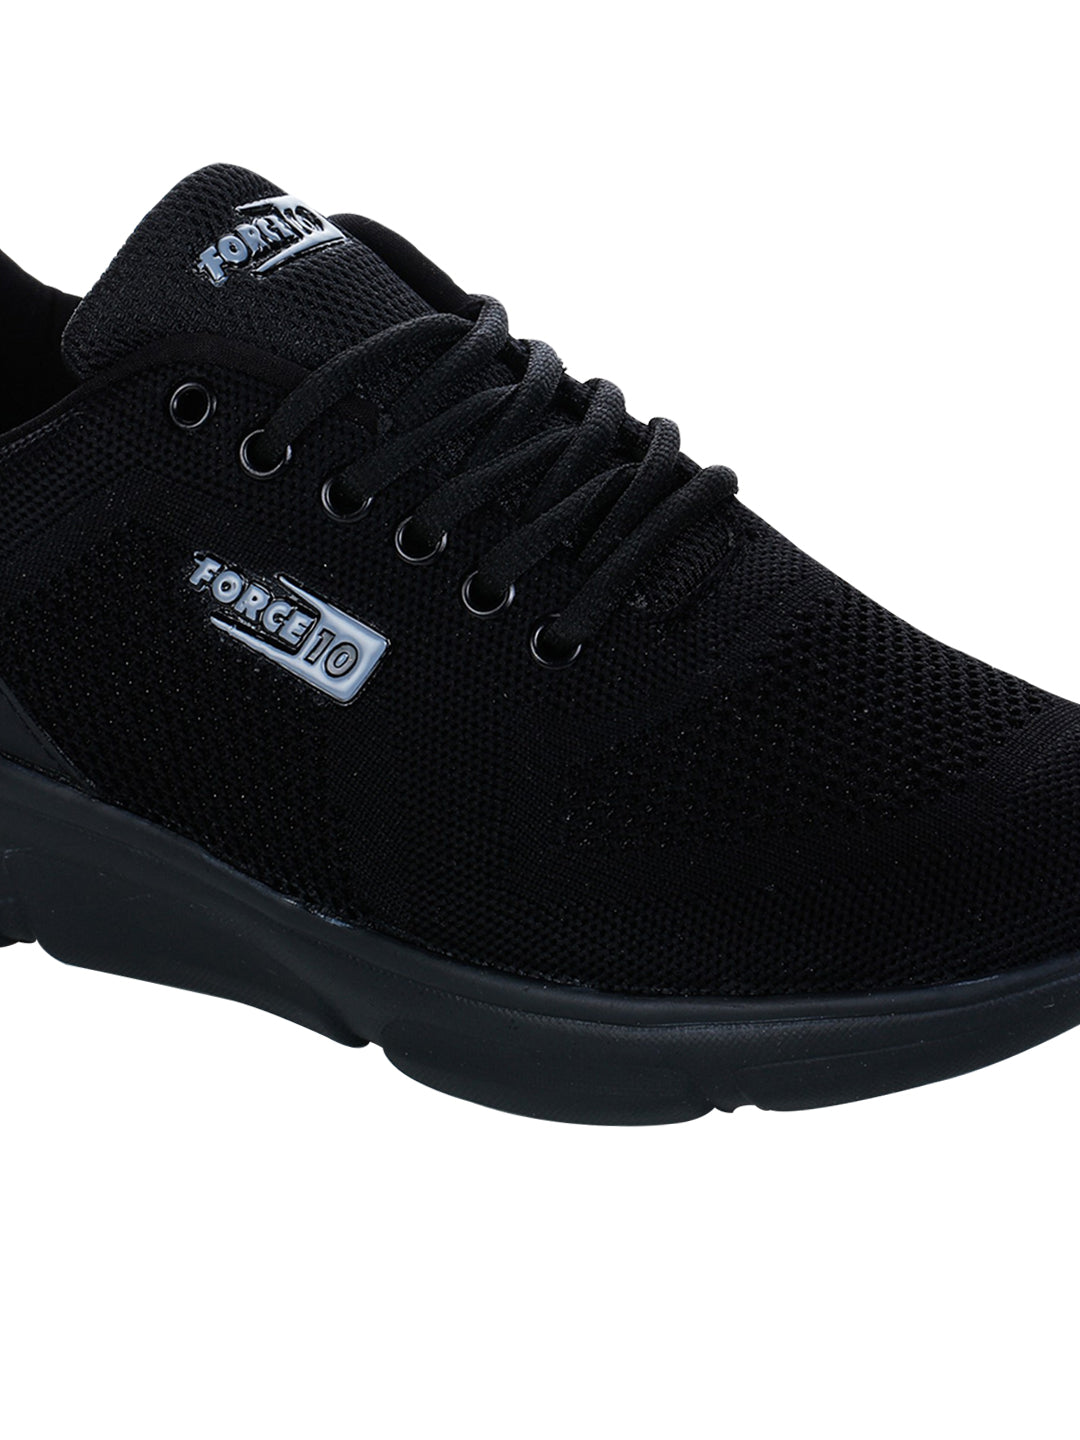 Footwear, Men Footwear, Black Running Shoes